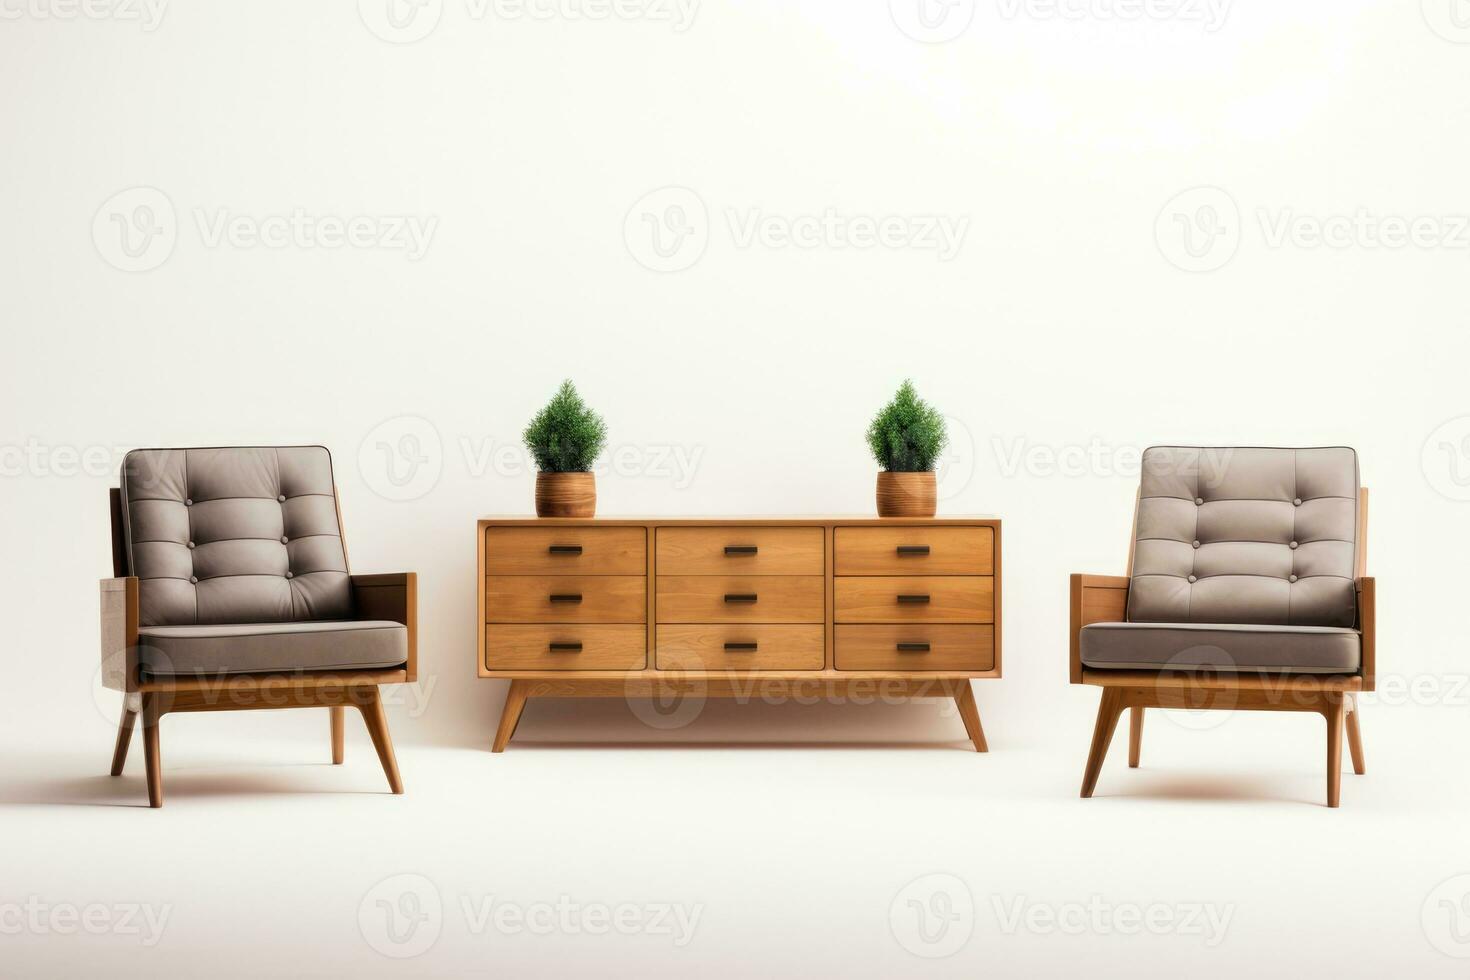 Elegant simple wooden furniture symbolizing minimalist living isolated on a white background photo